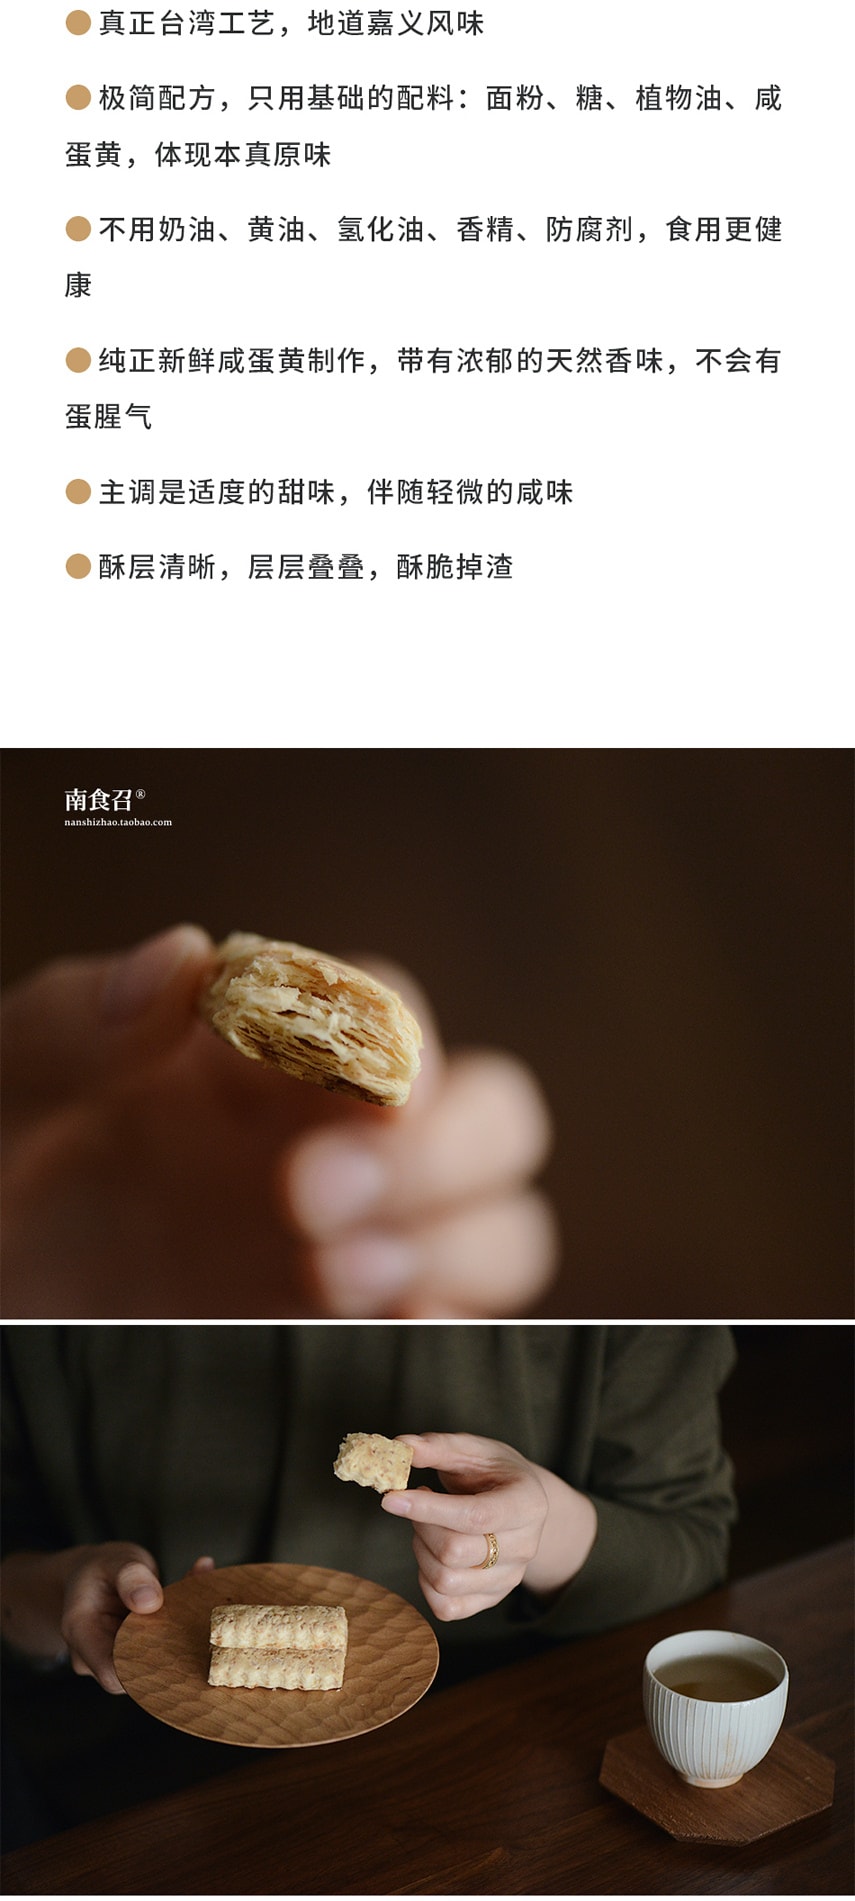 【网红零食】咸蛋黄饼干 100克 本真原味 恩典酥 地道台湾工艺 南食召品牌